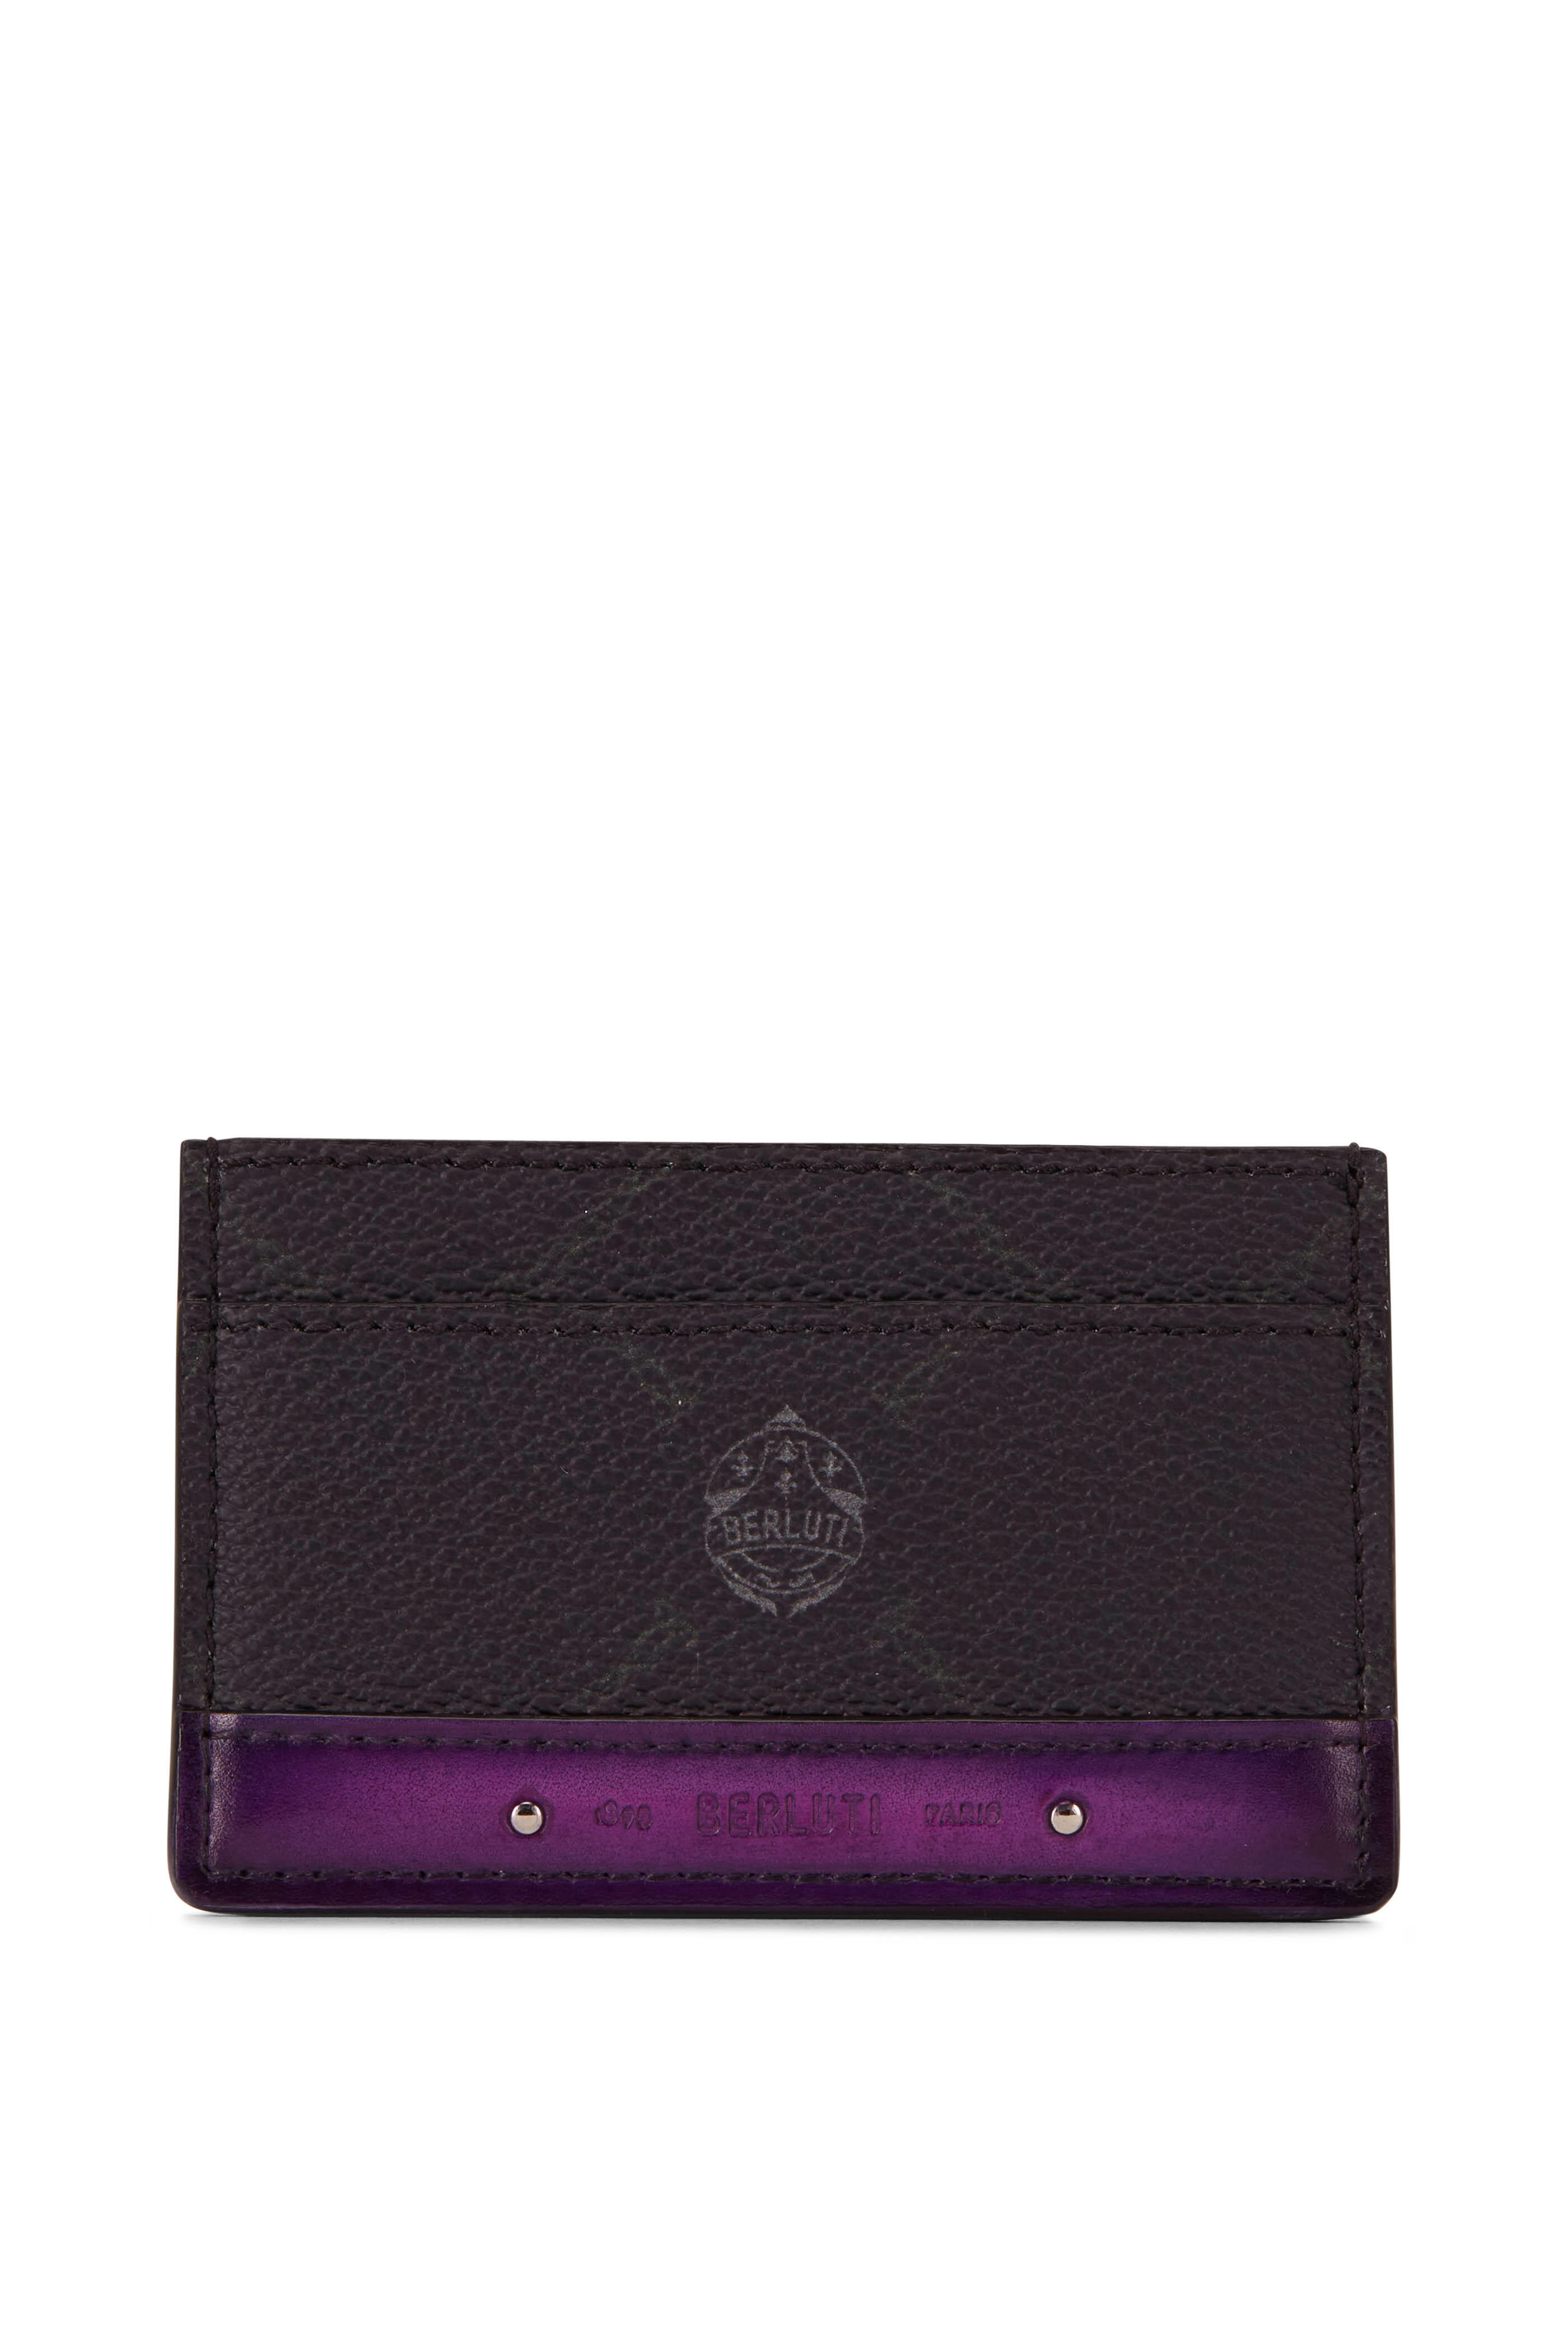 Berluti - Séjour Black & Purple Canvas & Leather Card Holder